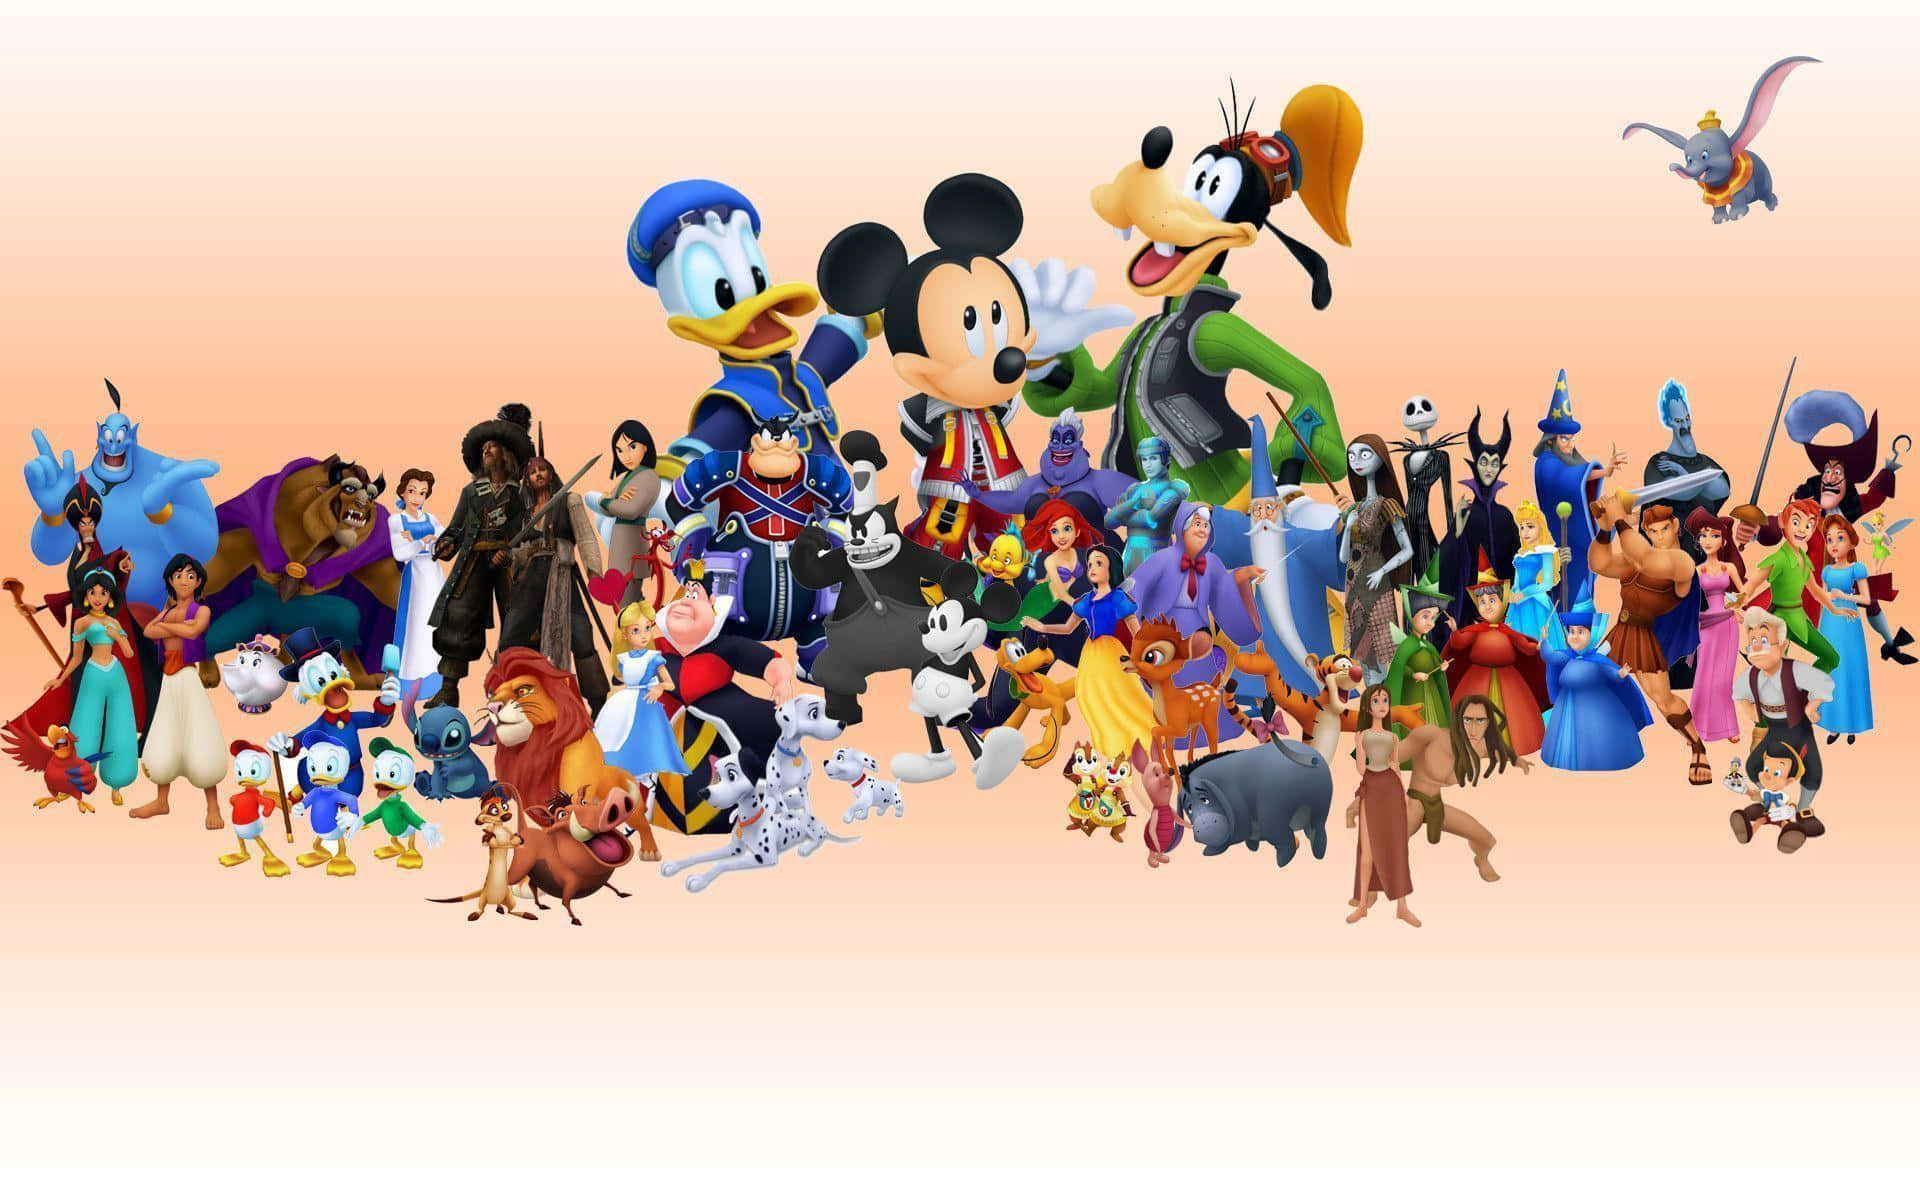 Bästadisney-bakgrundsbild: Donald, Mickey Och Goofy Med Andra Karaktärer.